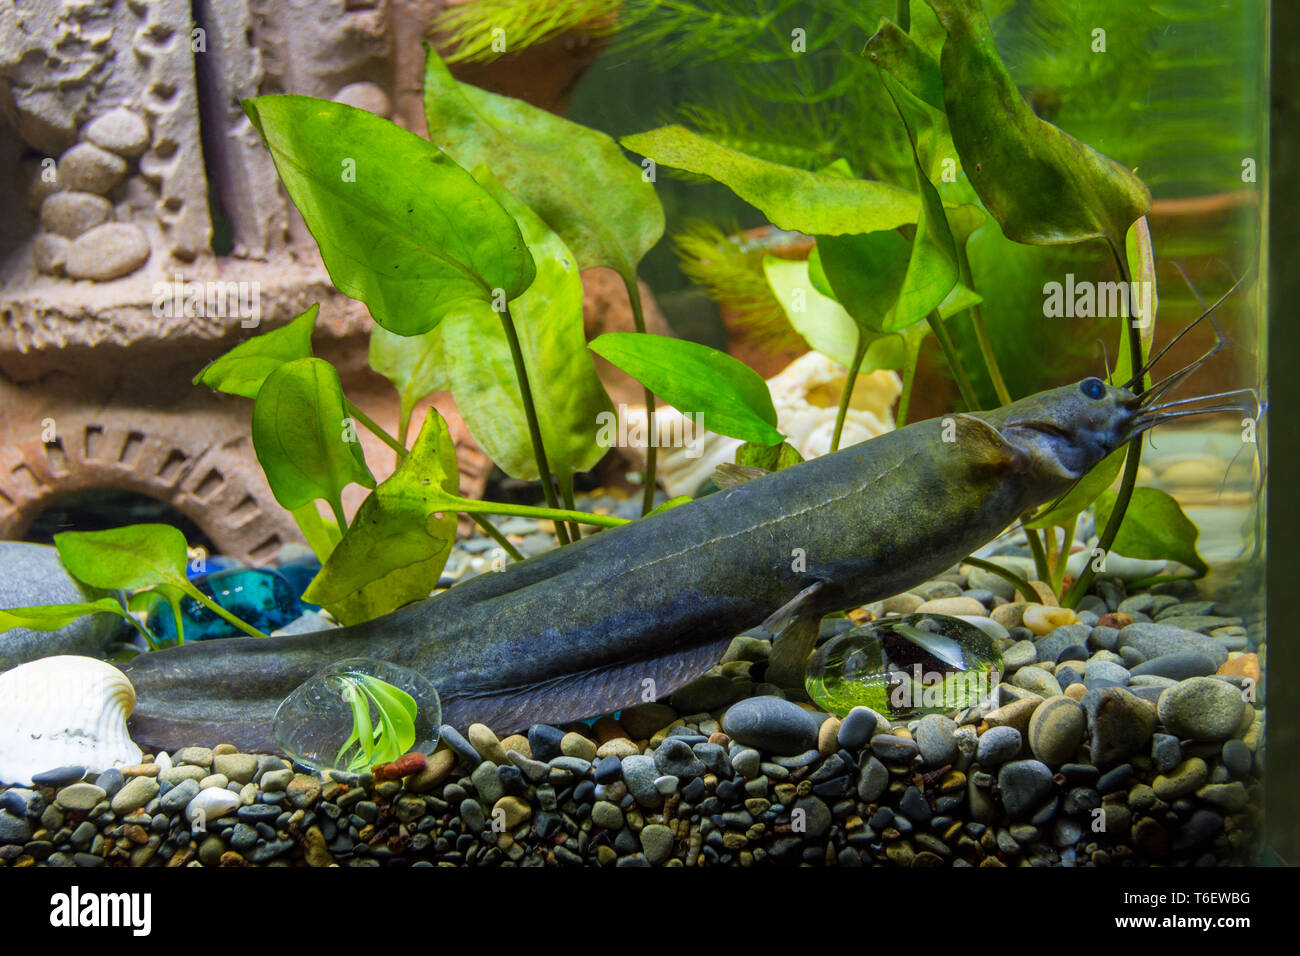 Sludge flies in a freshwater aquarium Stock Photo